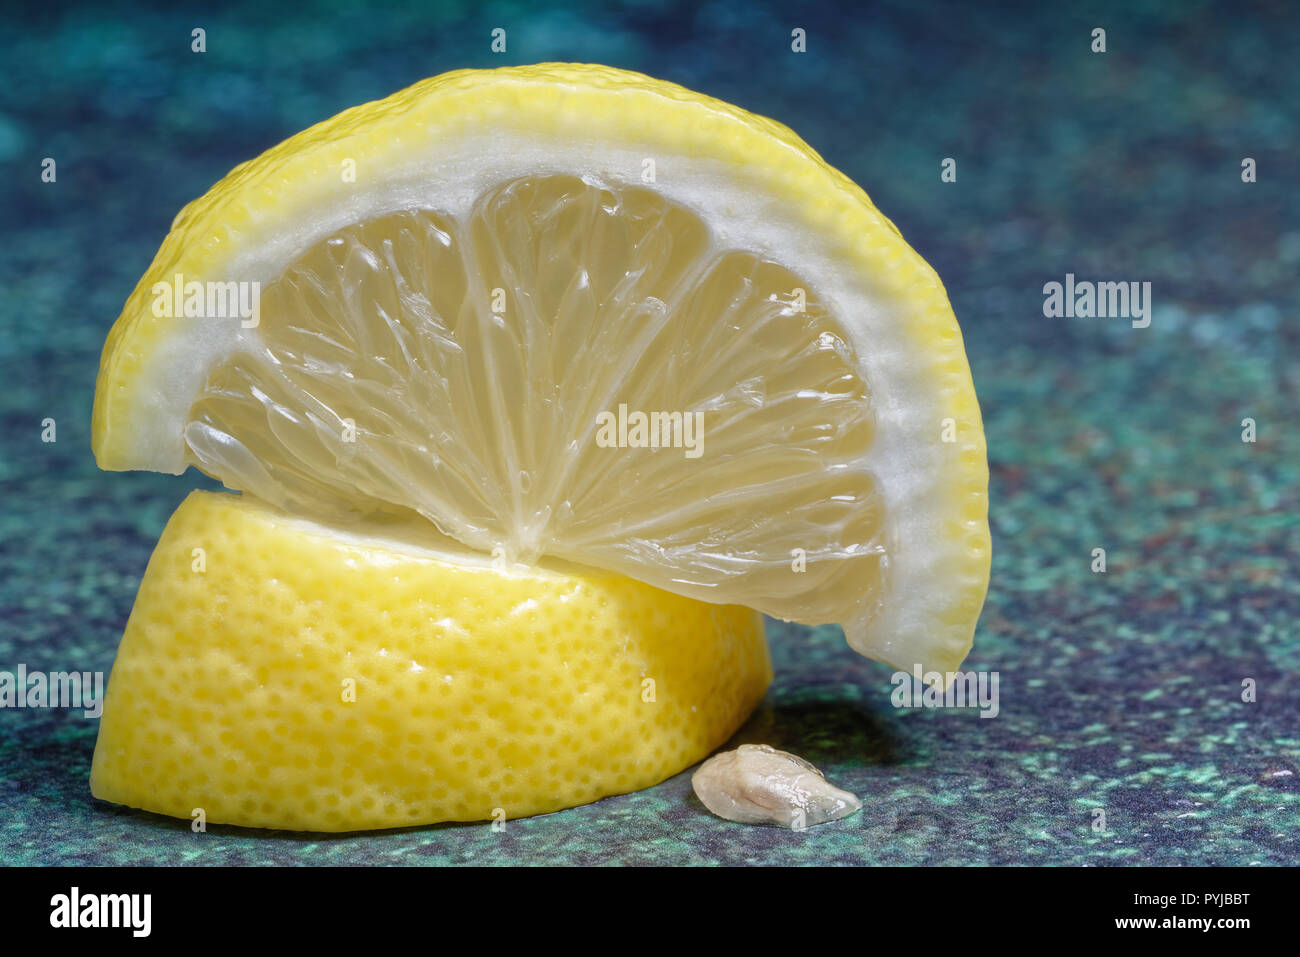 Zitrone Keile und Grube auf Blau Grün meliert countertop Stockfoto